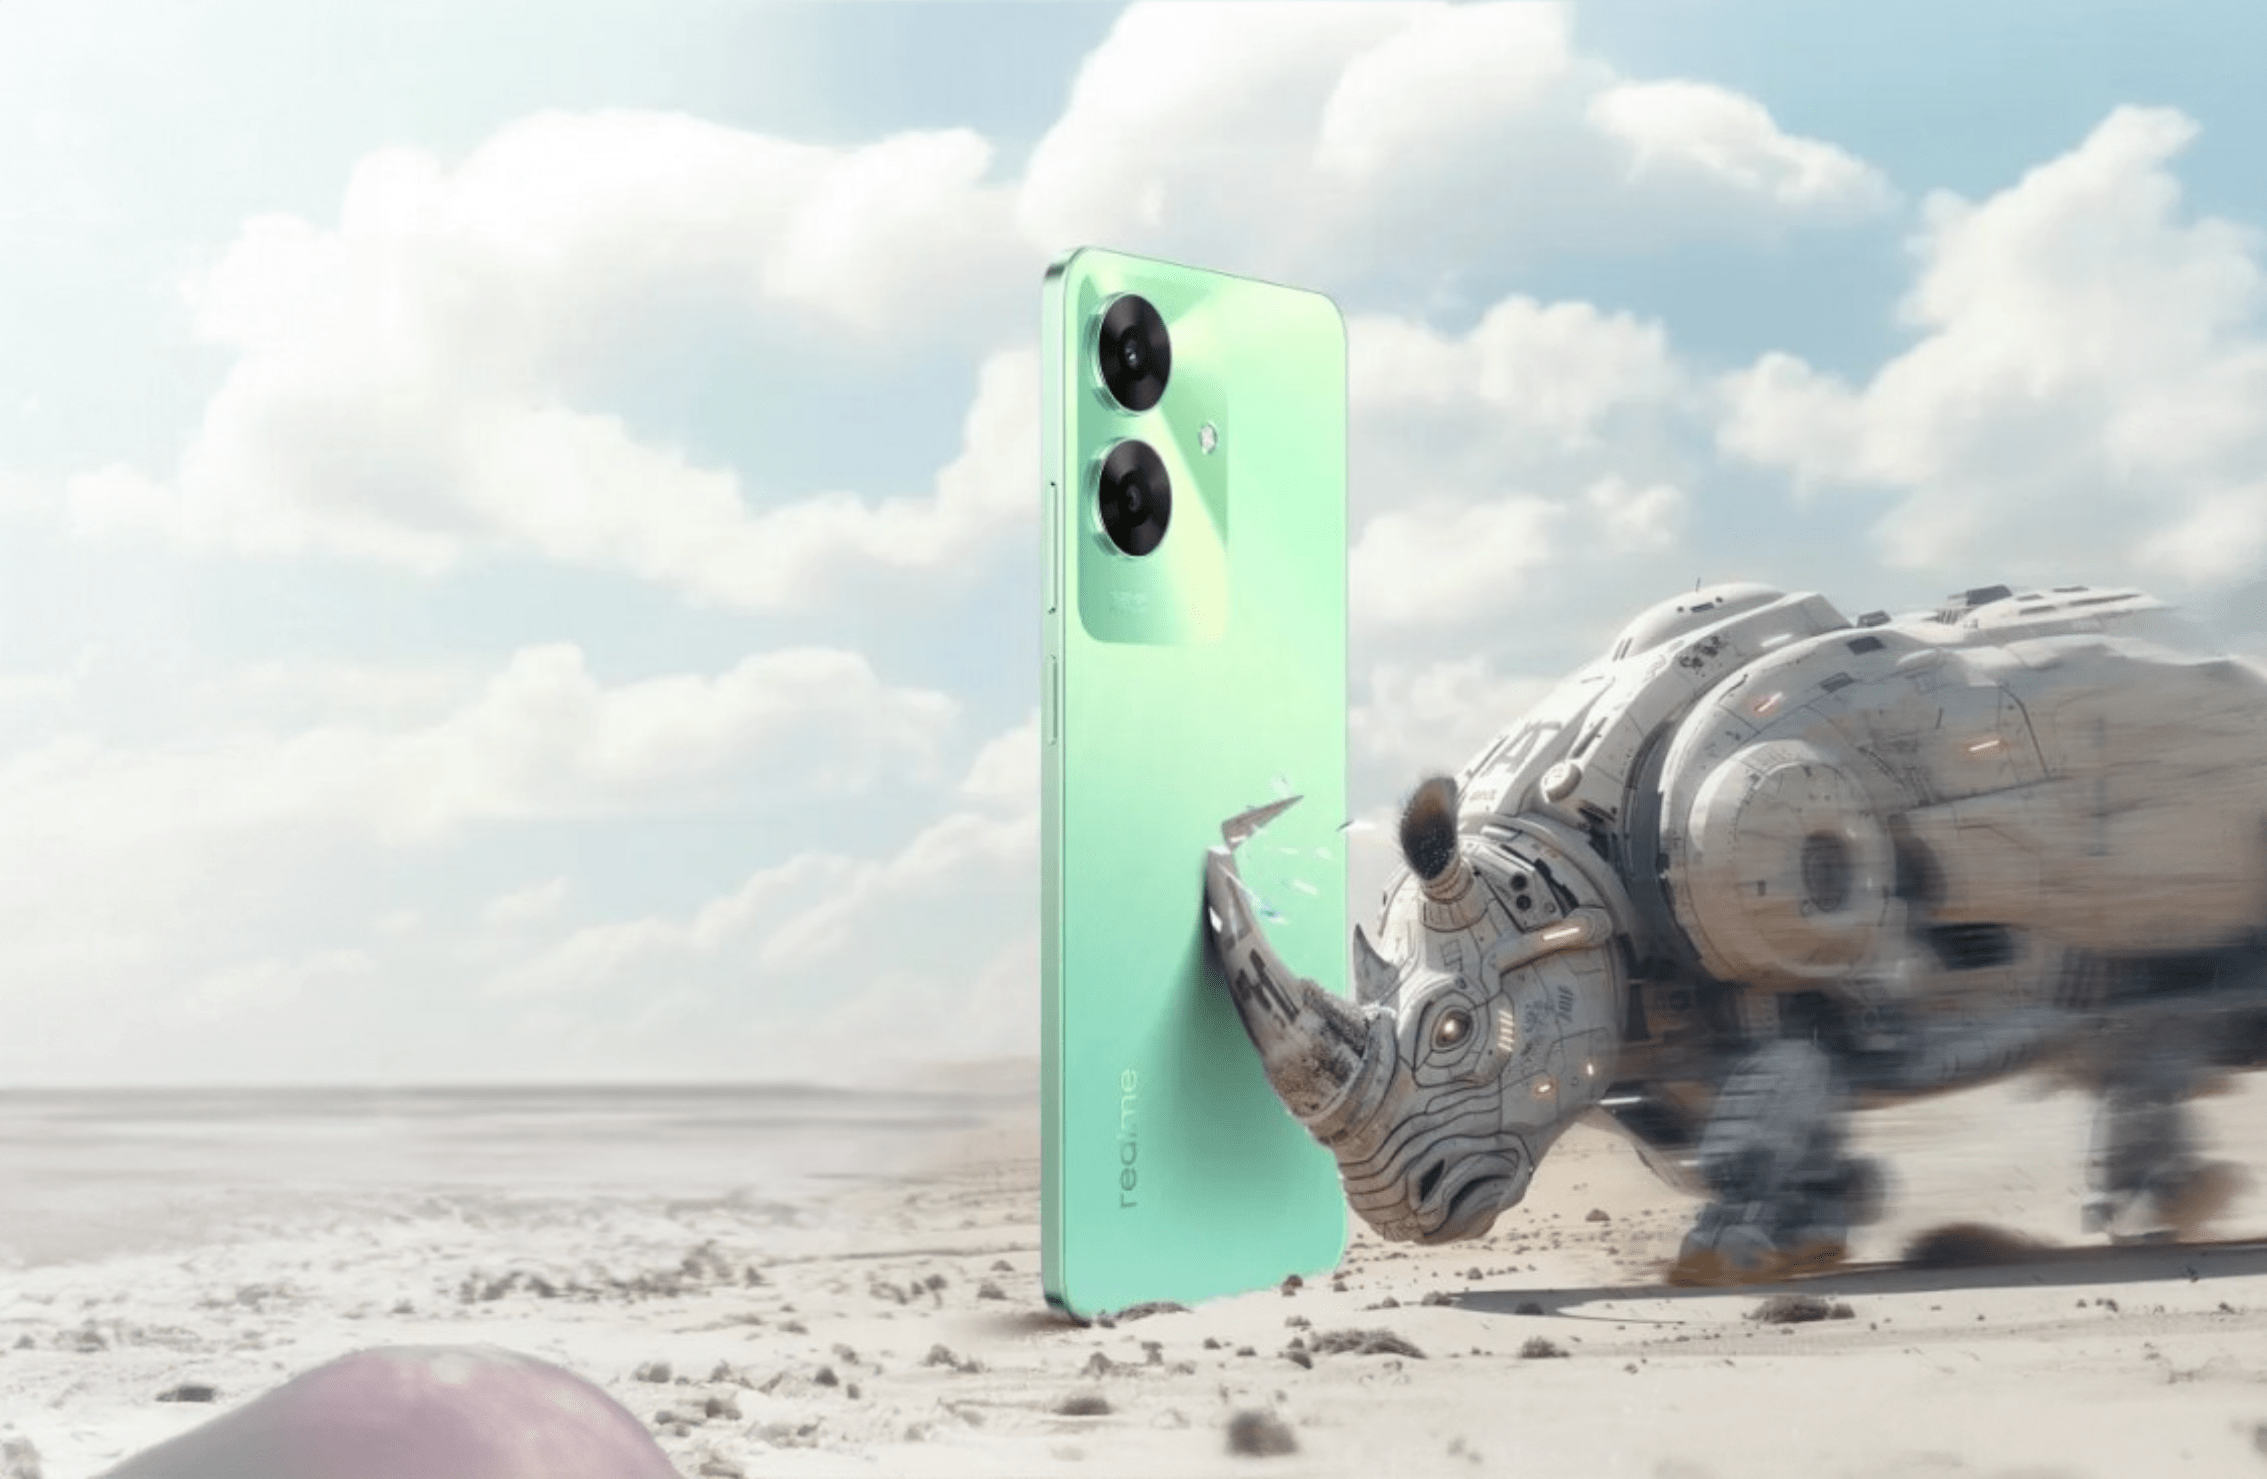 Zielony telefon realme na pustyni, atakowany przez futurystycznego, mechanicznego nosorożca.